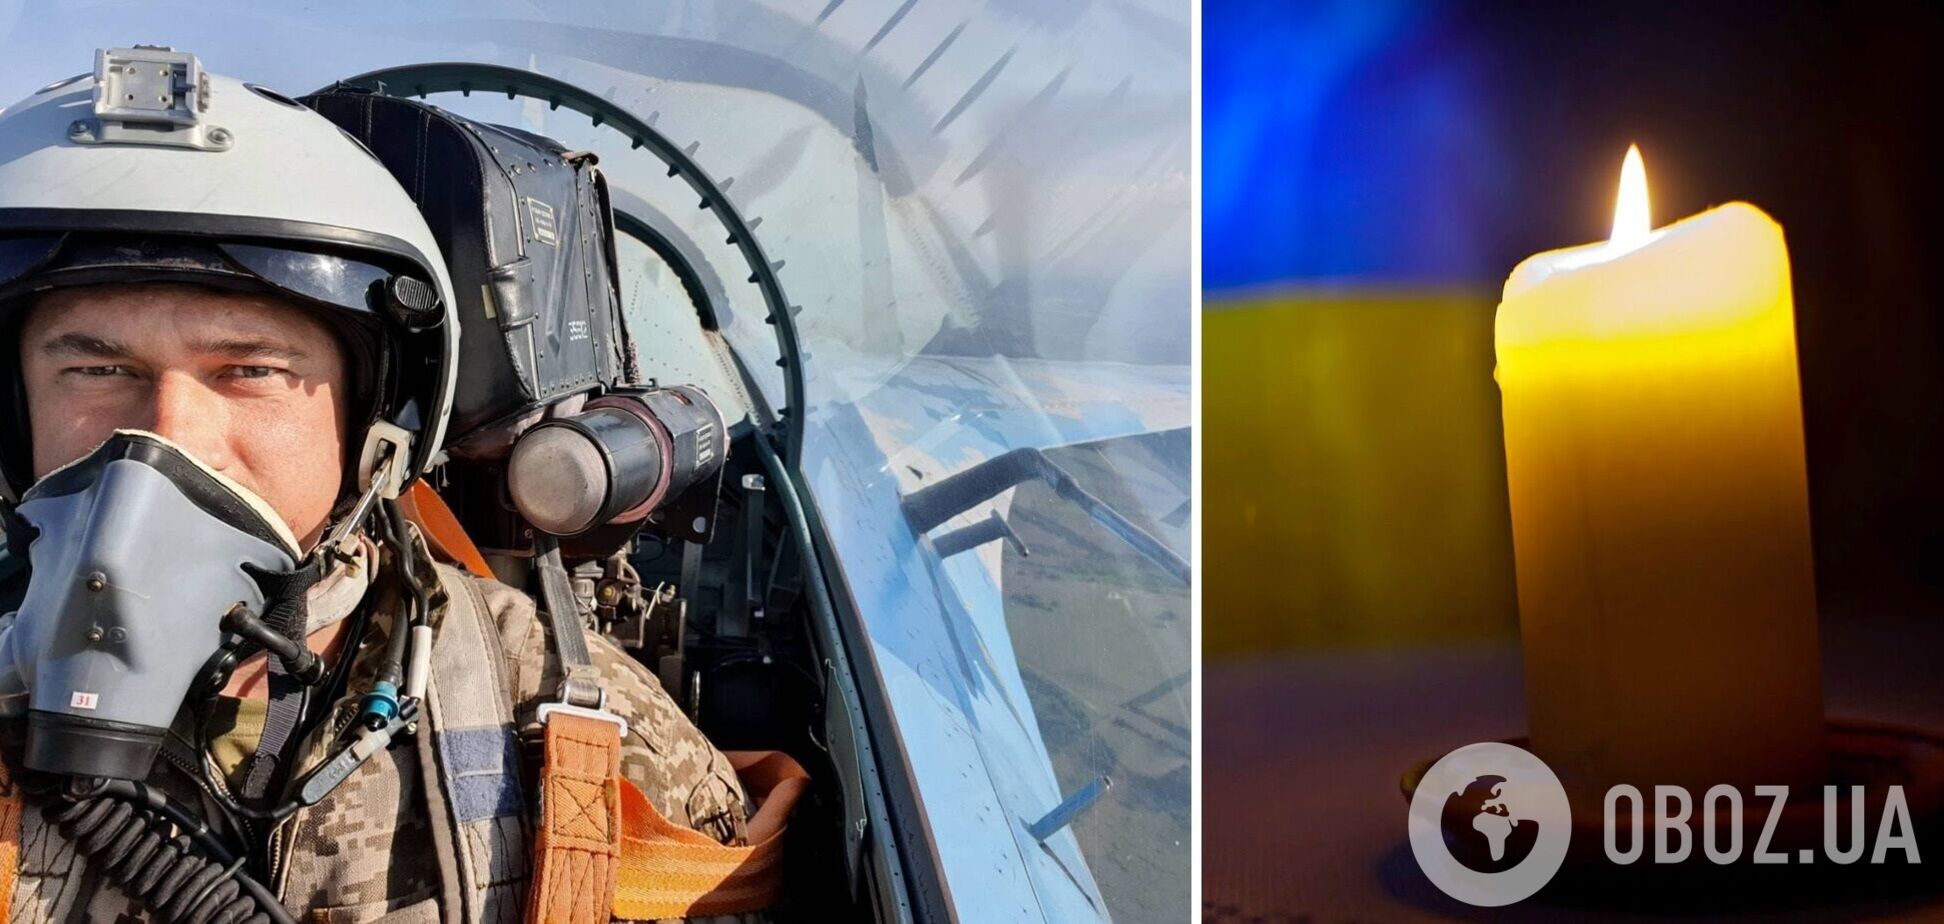 Во время боевого вылета погиб летчик Денис Кирилюк: всего 19 дней назад у него родился сын. Фото